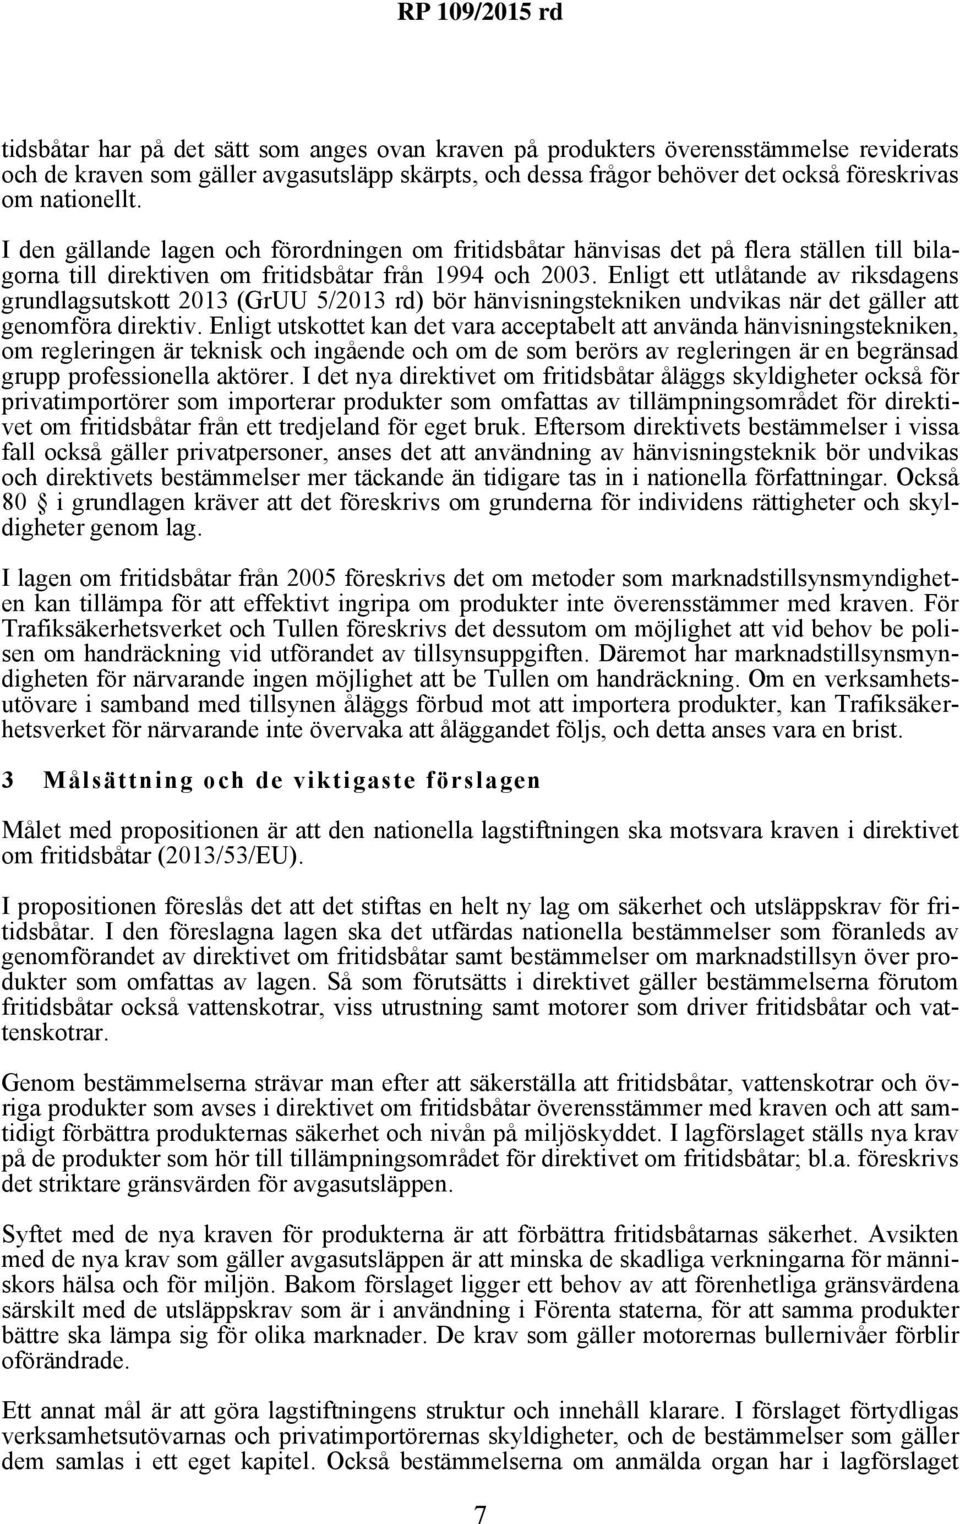 Enligt ett utlåtande av riksdagens grundlagsutskott 2013 (GrUU 5/2013 rd) bör hänvisningstekniken undvikas när det gäller att genomföra direktiv.